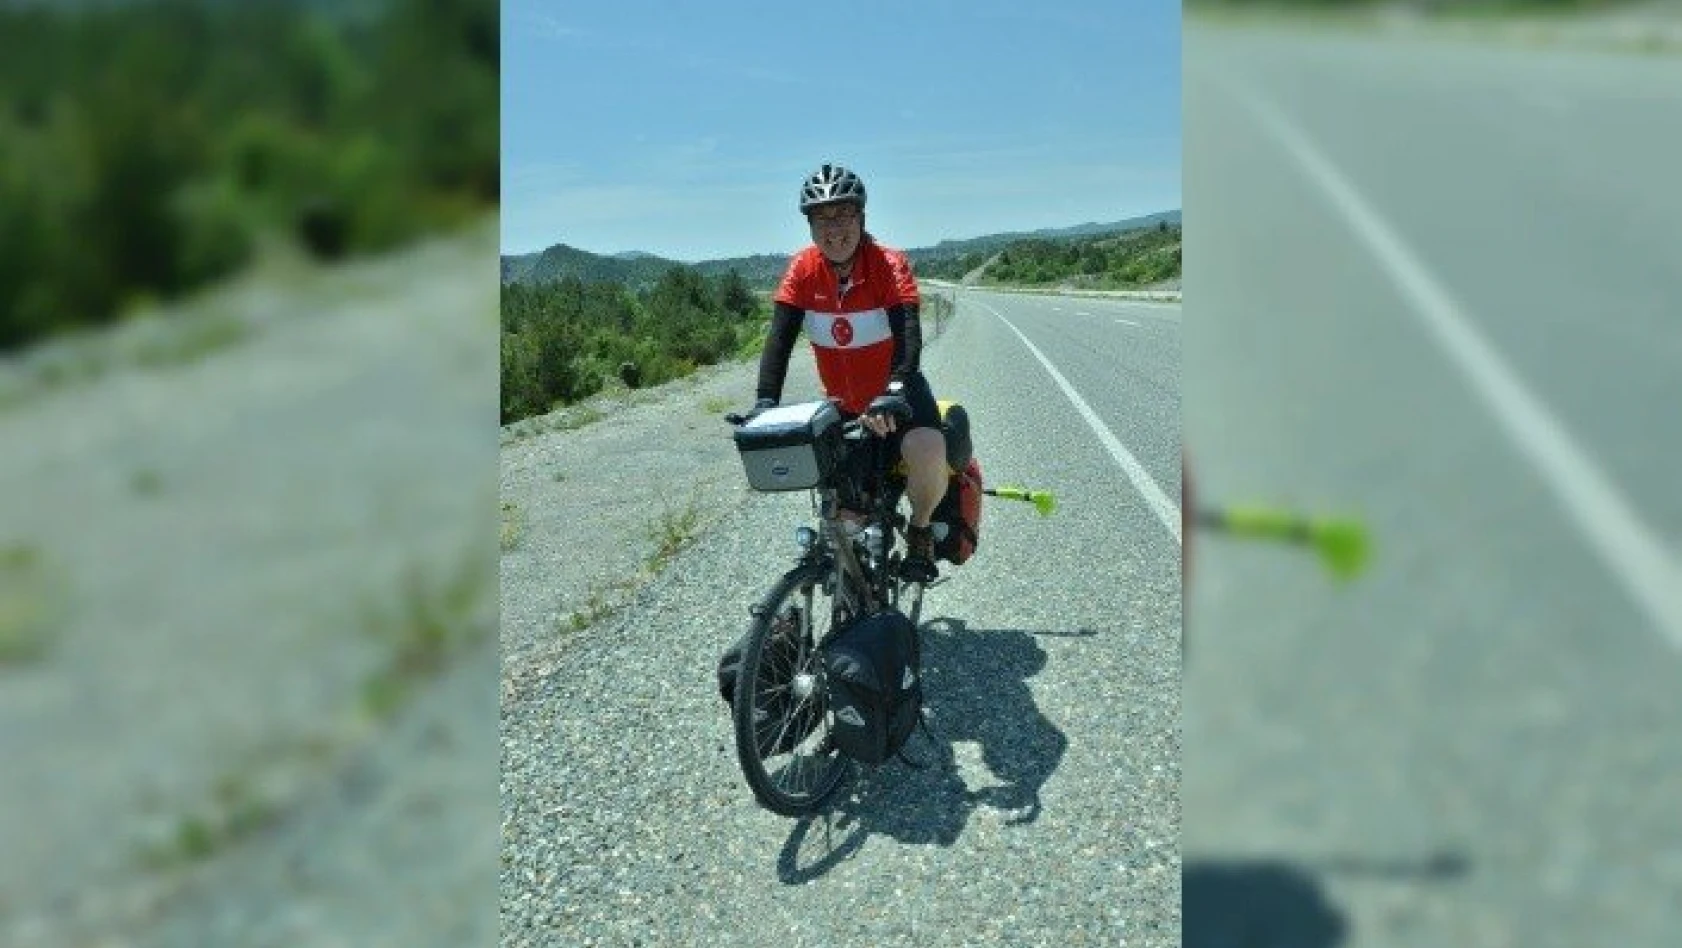 Bisikletli İngiliz ay yıldızlı tişörtüyle Türkiye'den geçiyor